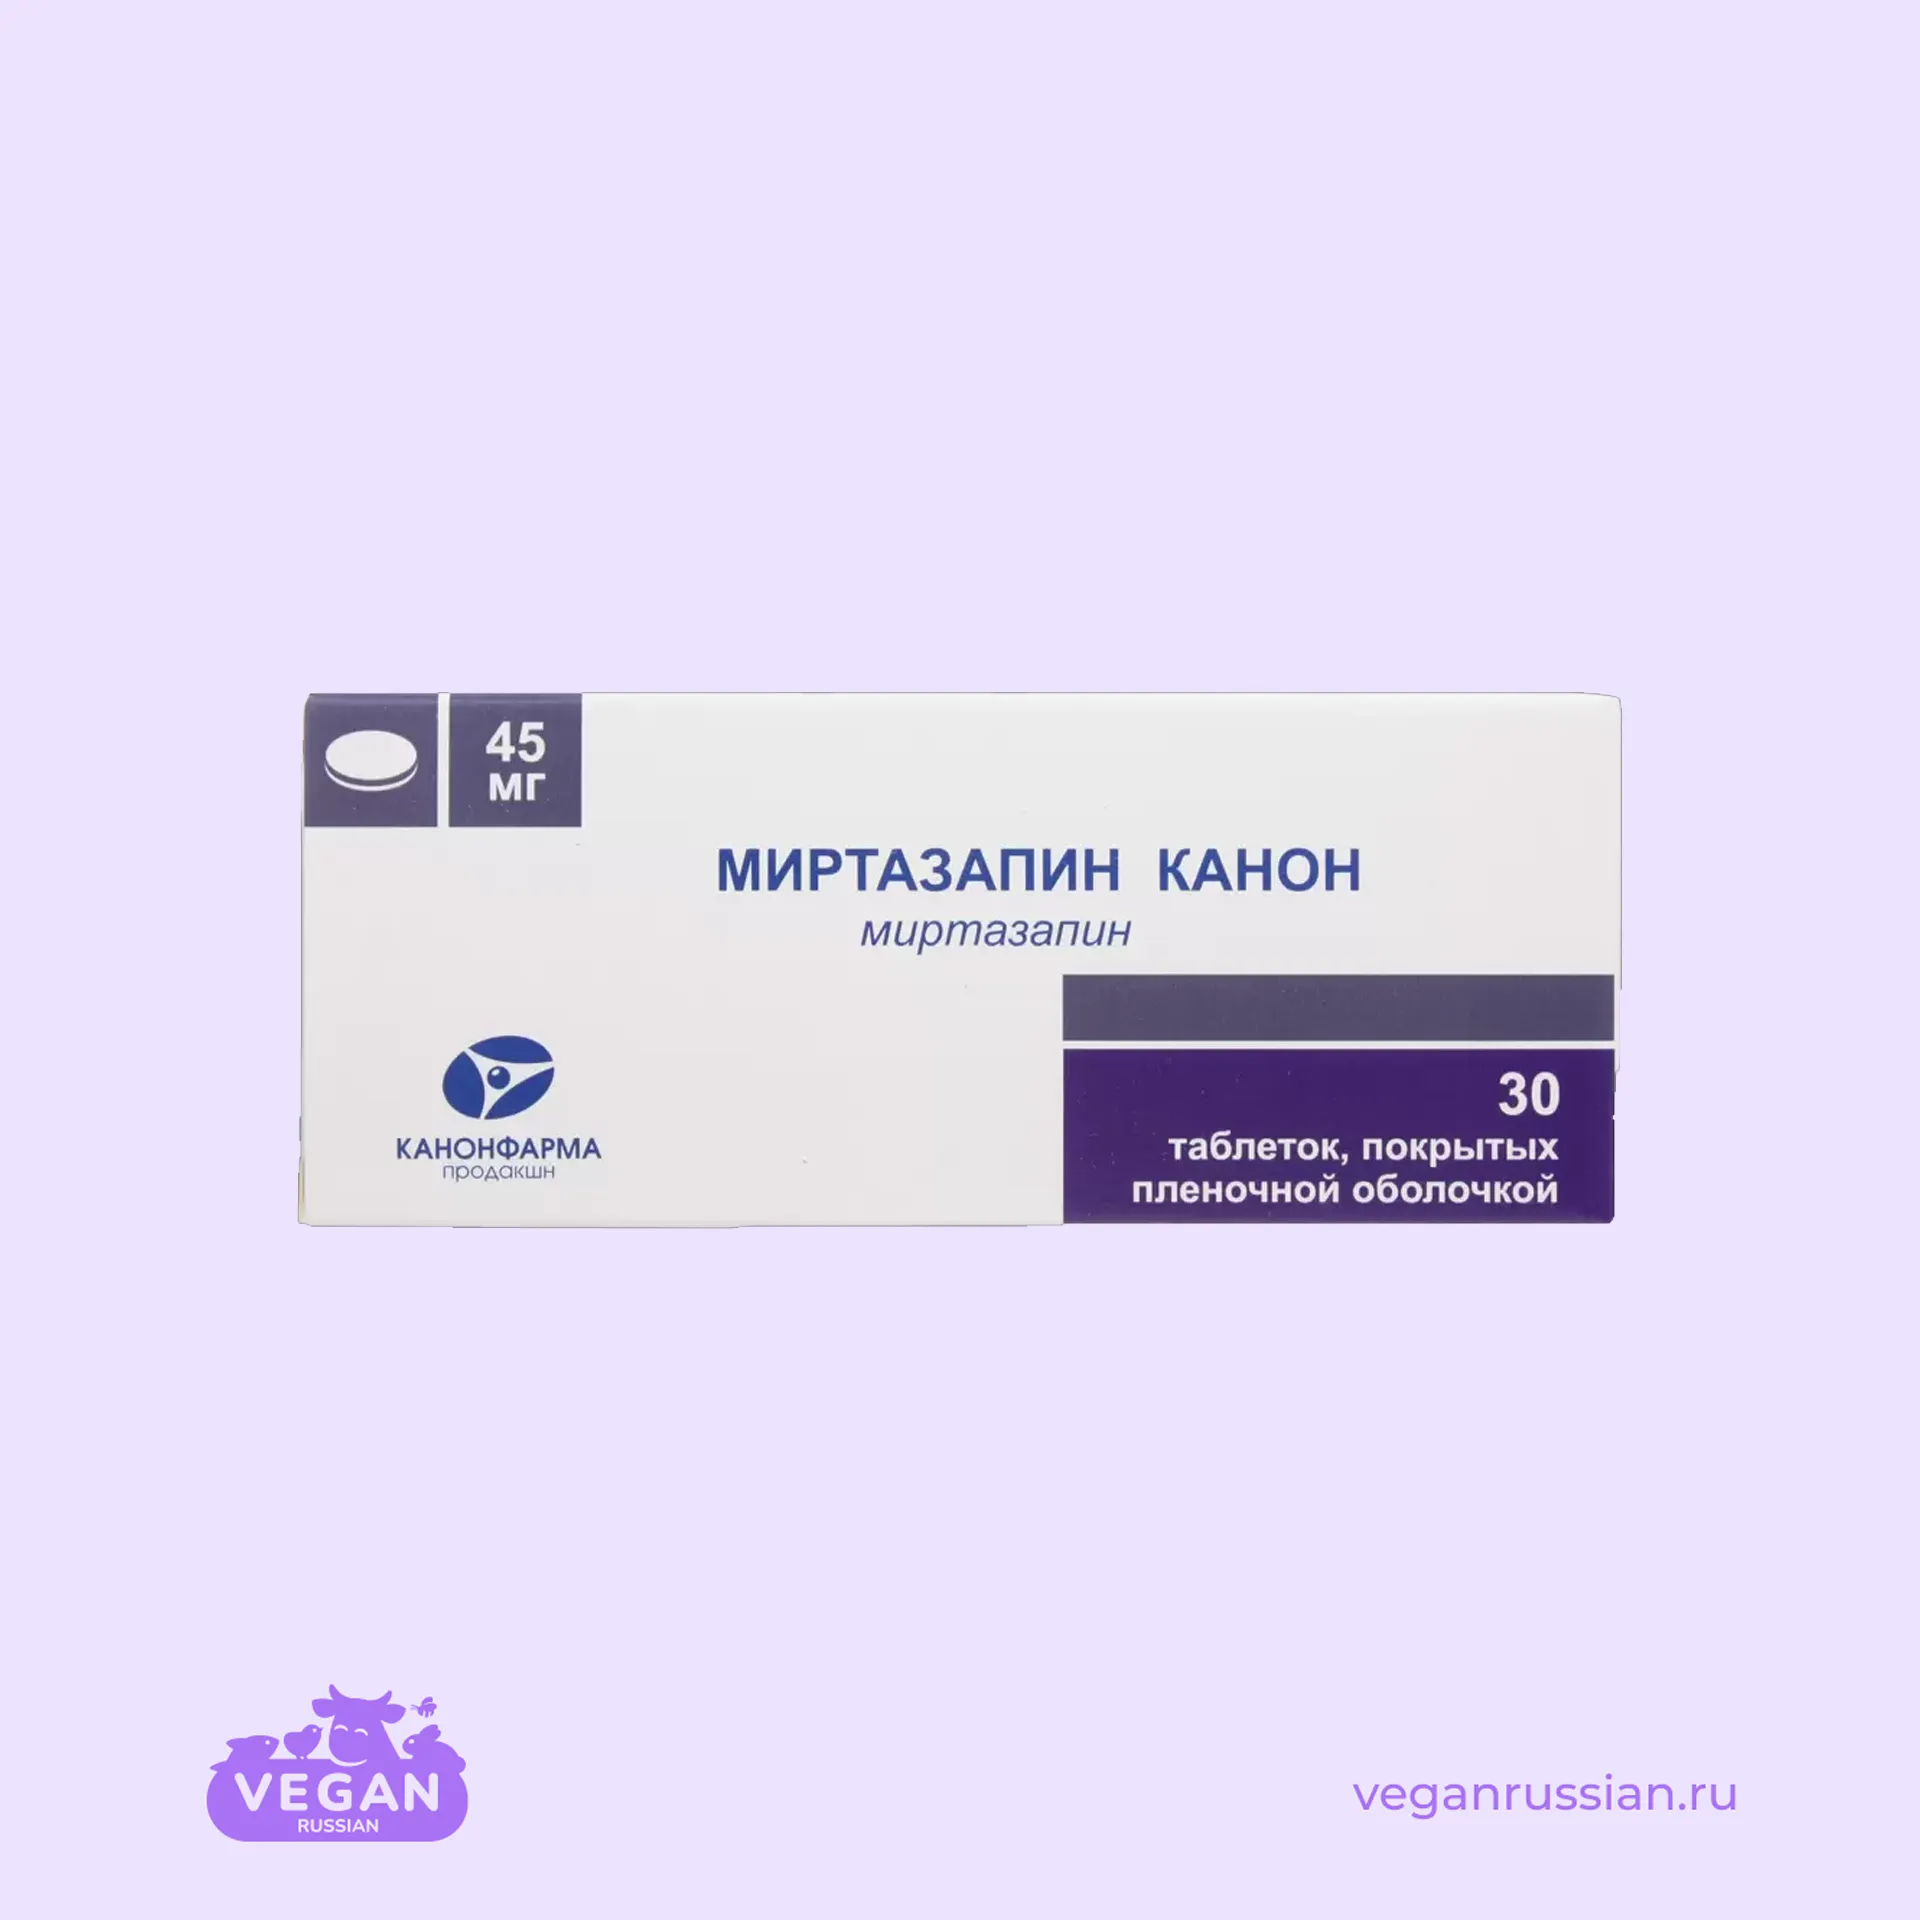 Миртазапин Канон КанонФарма 30 шт 30-45 мг